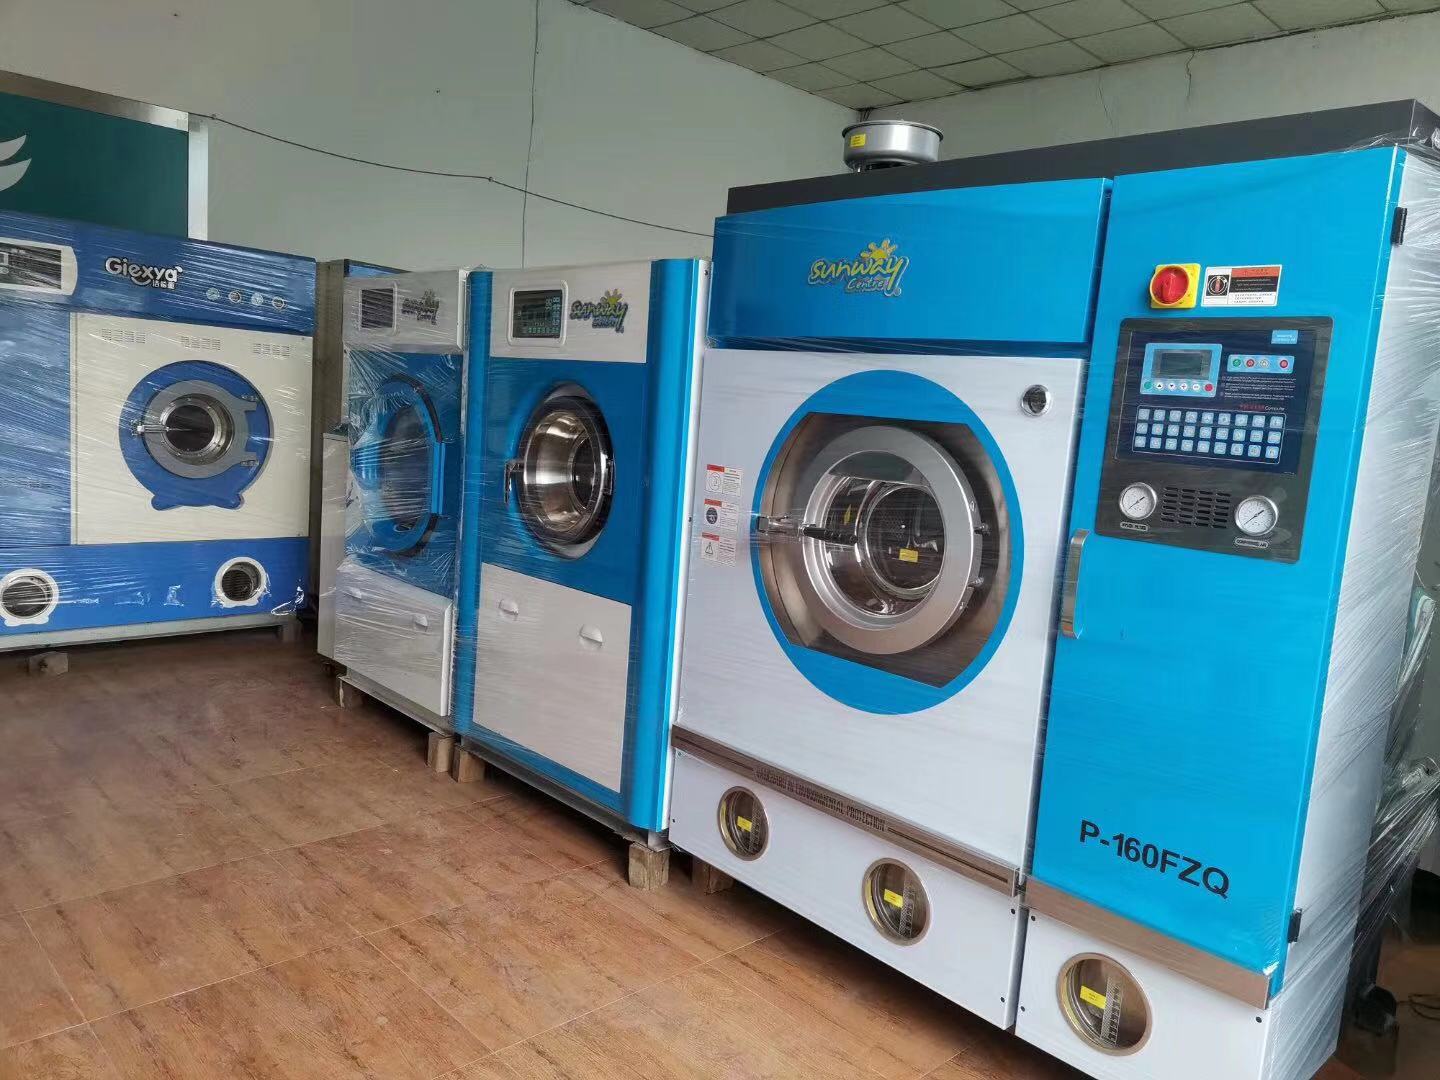 济南销售二手洗涤设备烘干机100公斤二手折叠机百强